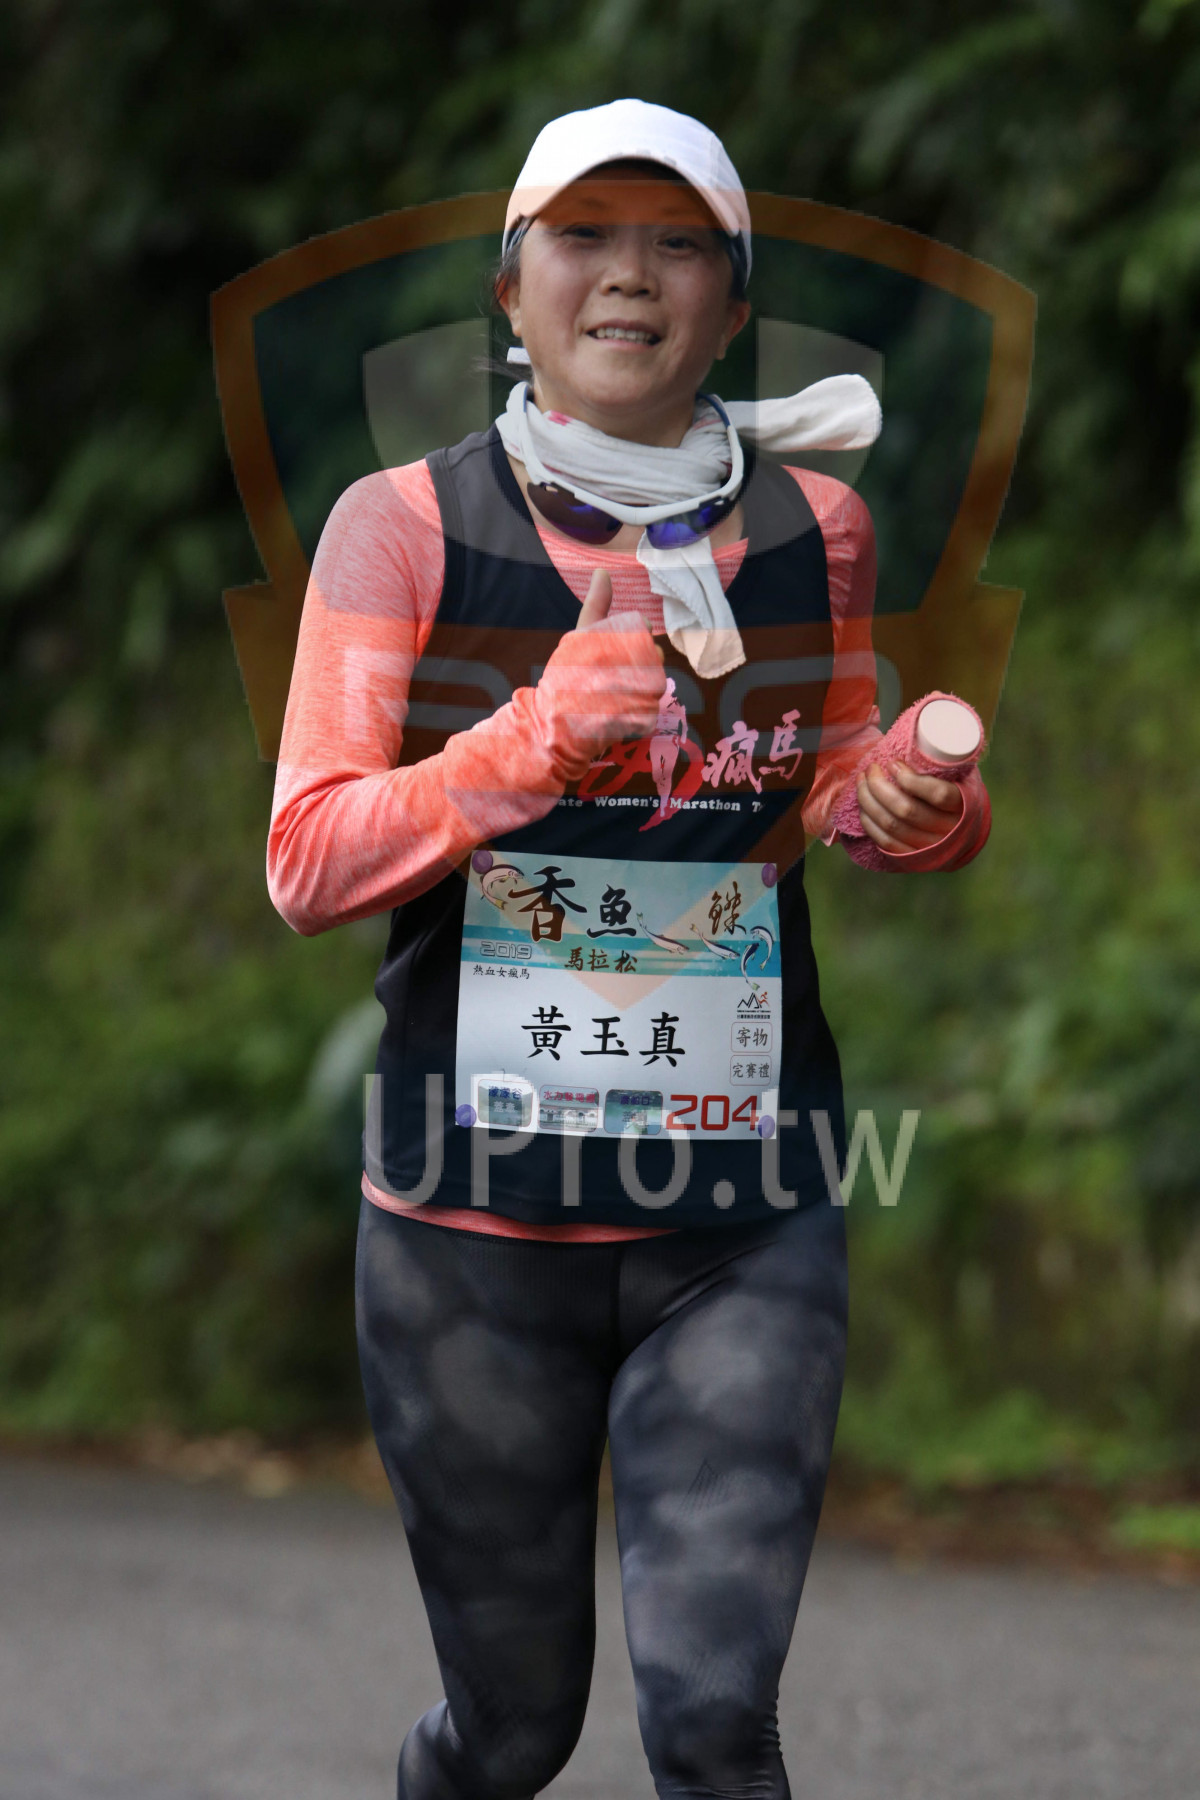 te Women's Marathon T,,,,,204|